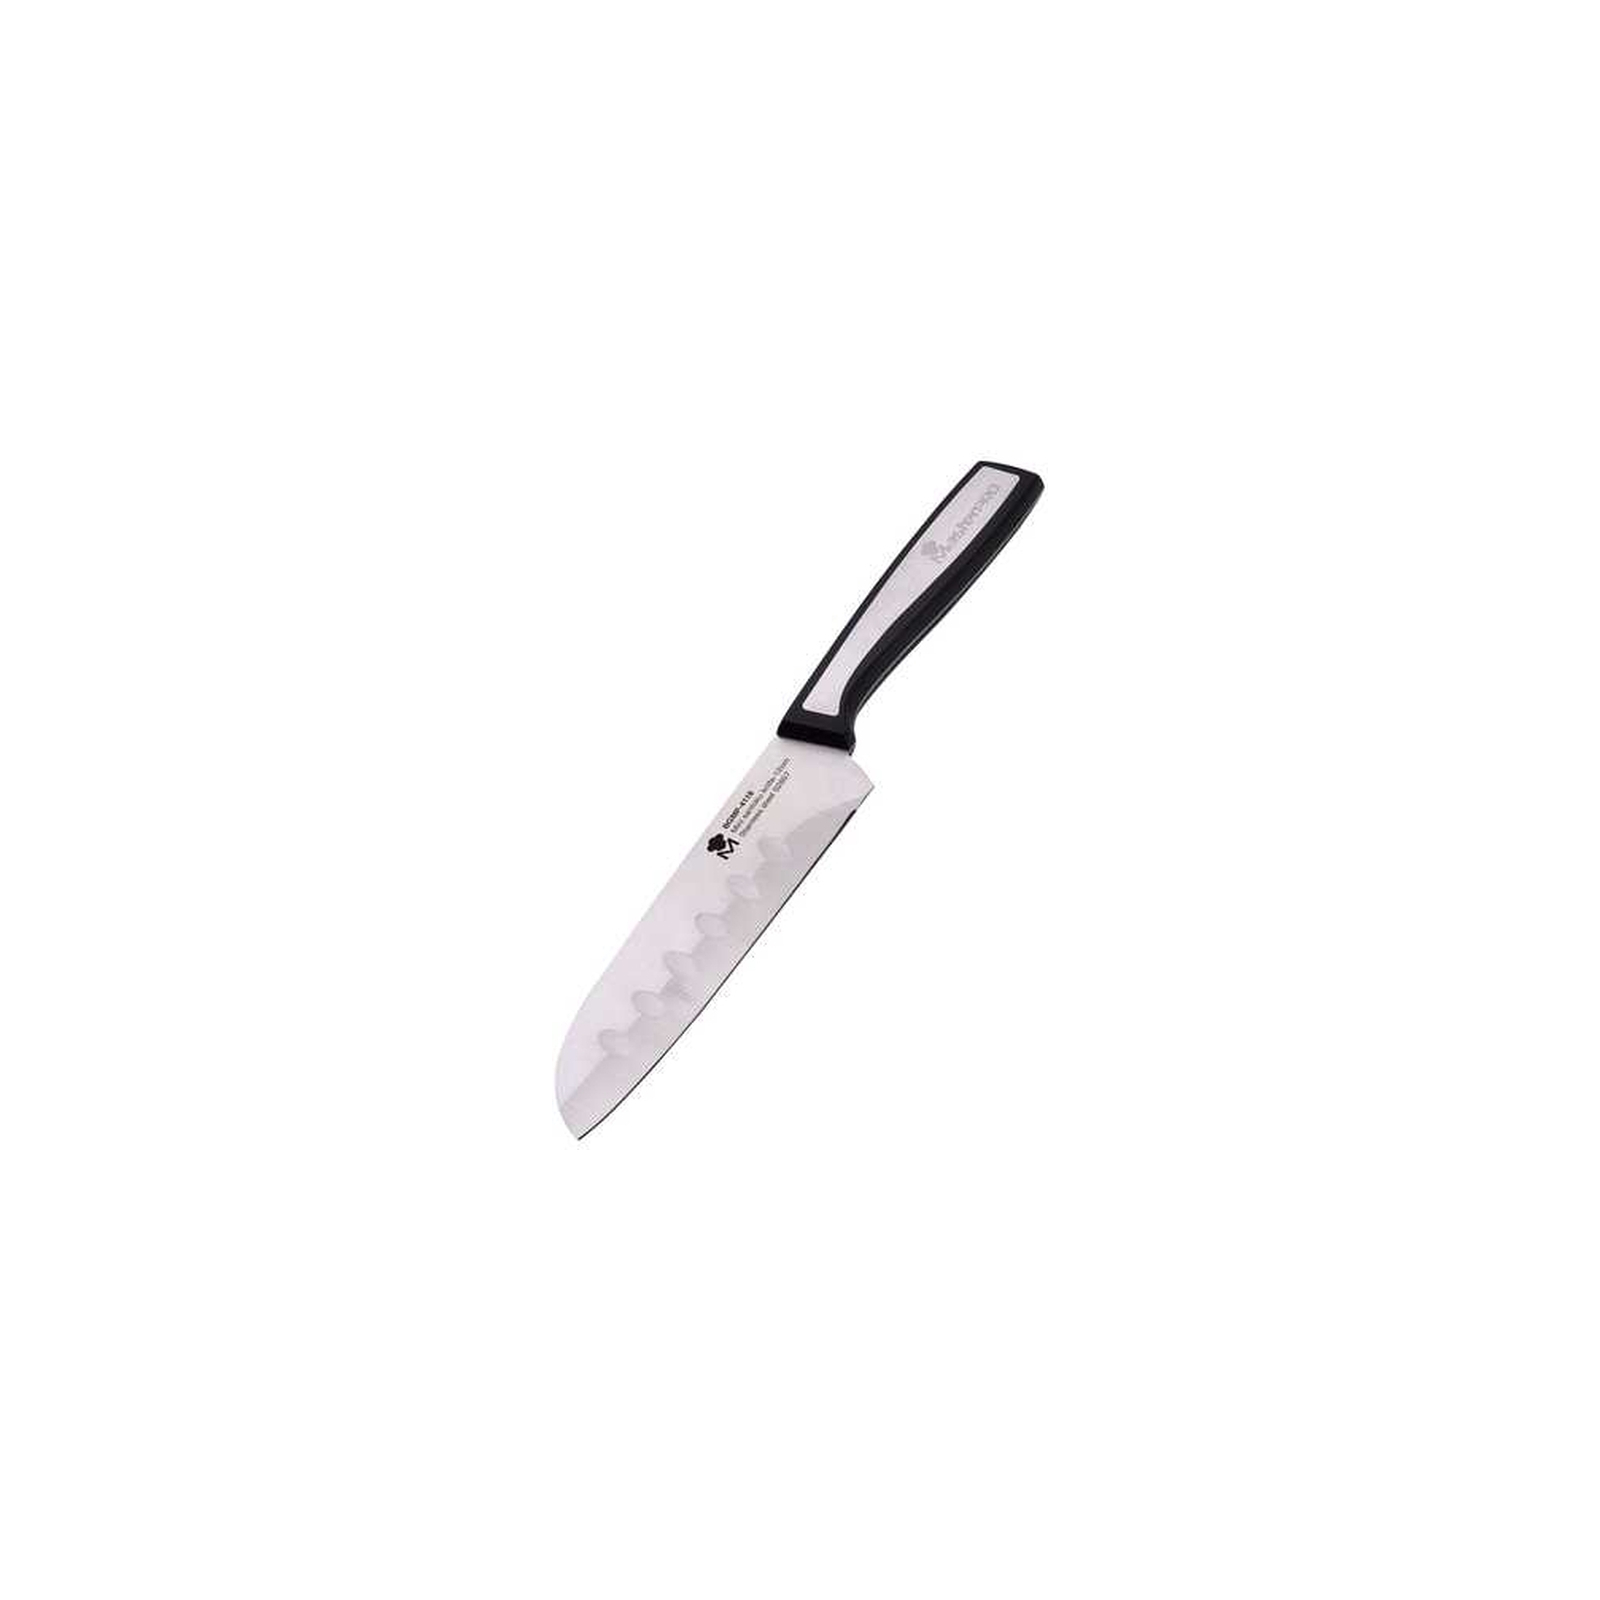 Кухонный нож MasterPro Sharp міні Сантоку 12 см (BGMP-4118)